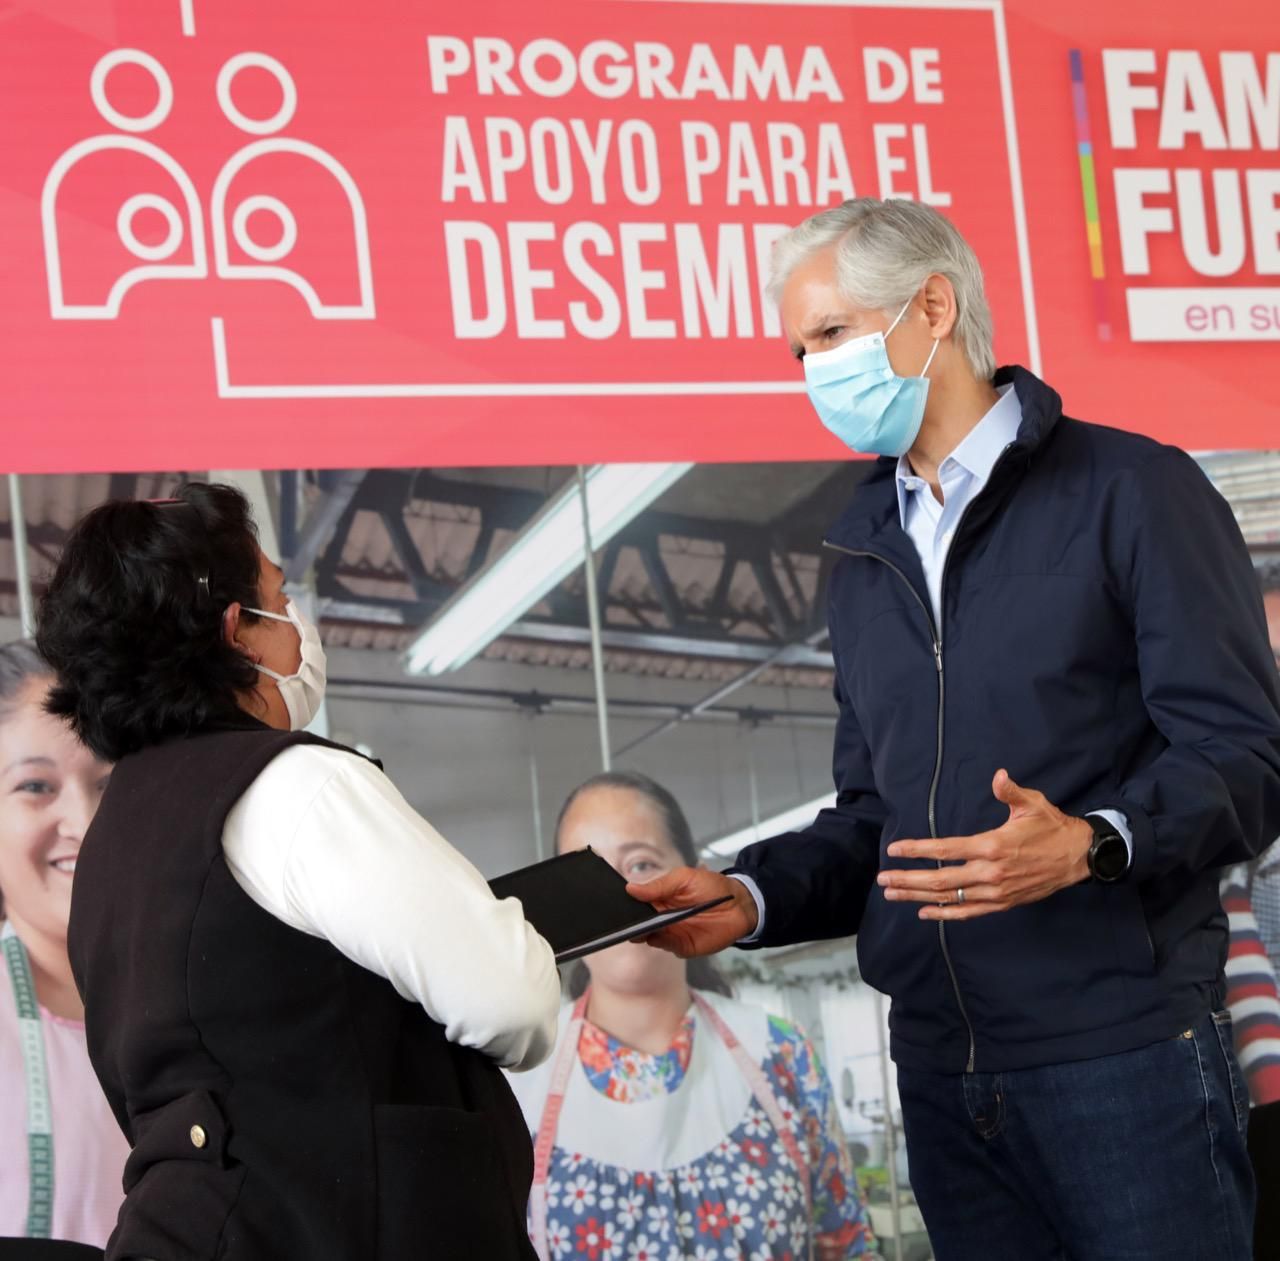 Programa de apoyo al desempleo permite reactivar economía familiar afectada por pandemia: Del Mazo 